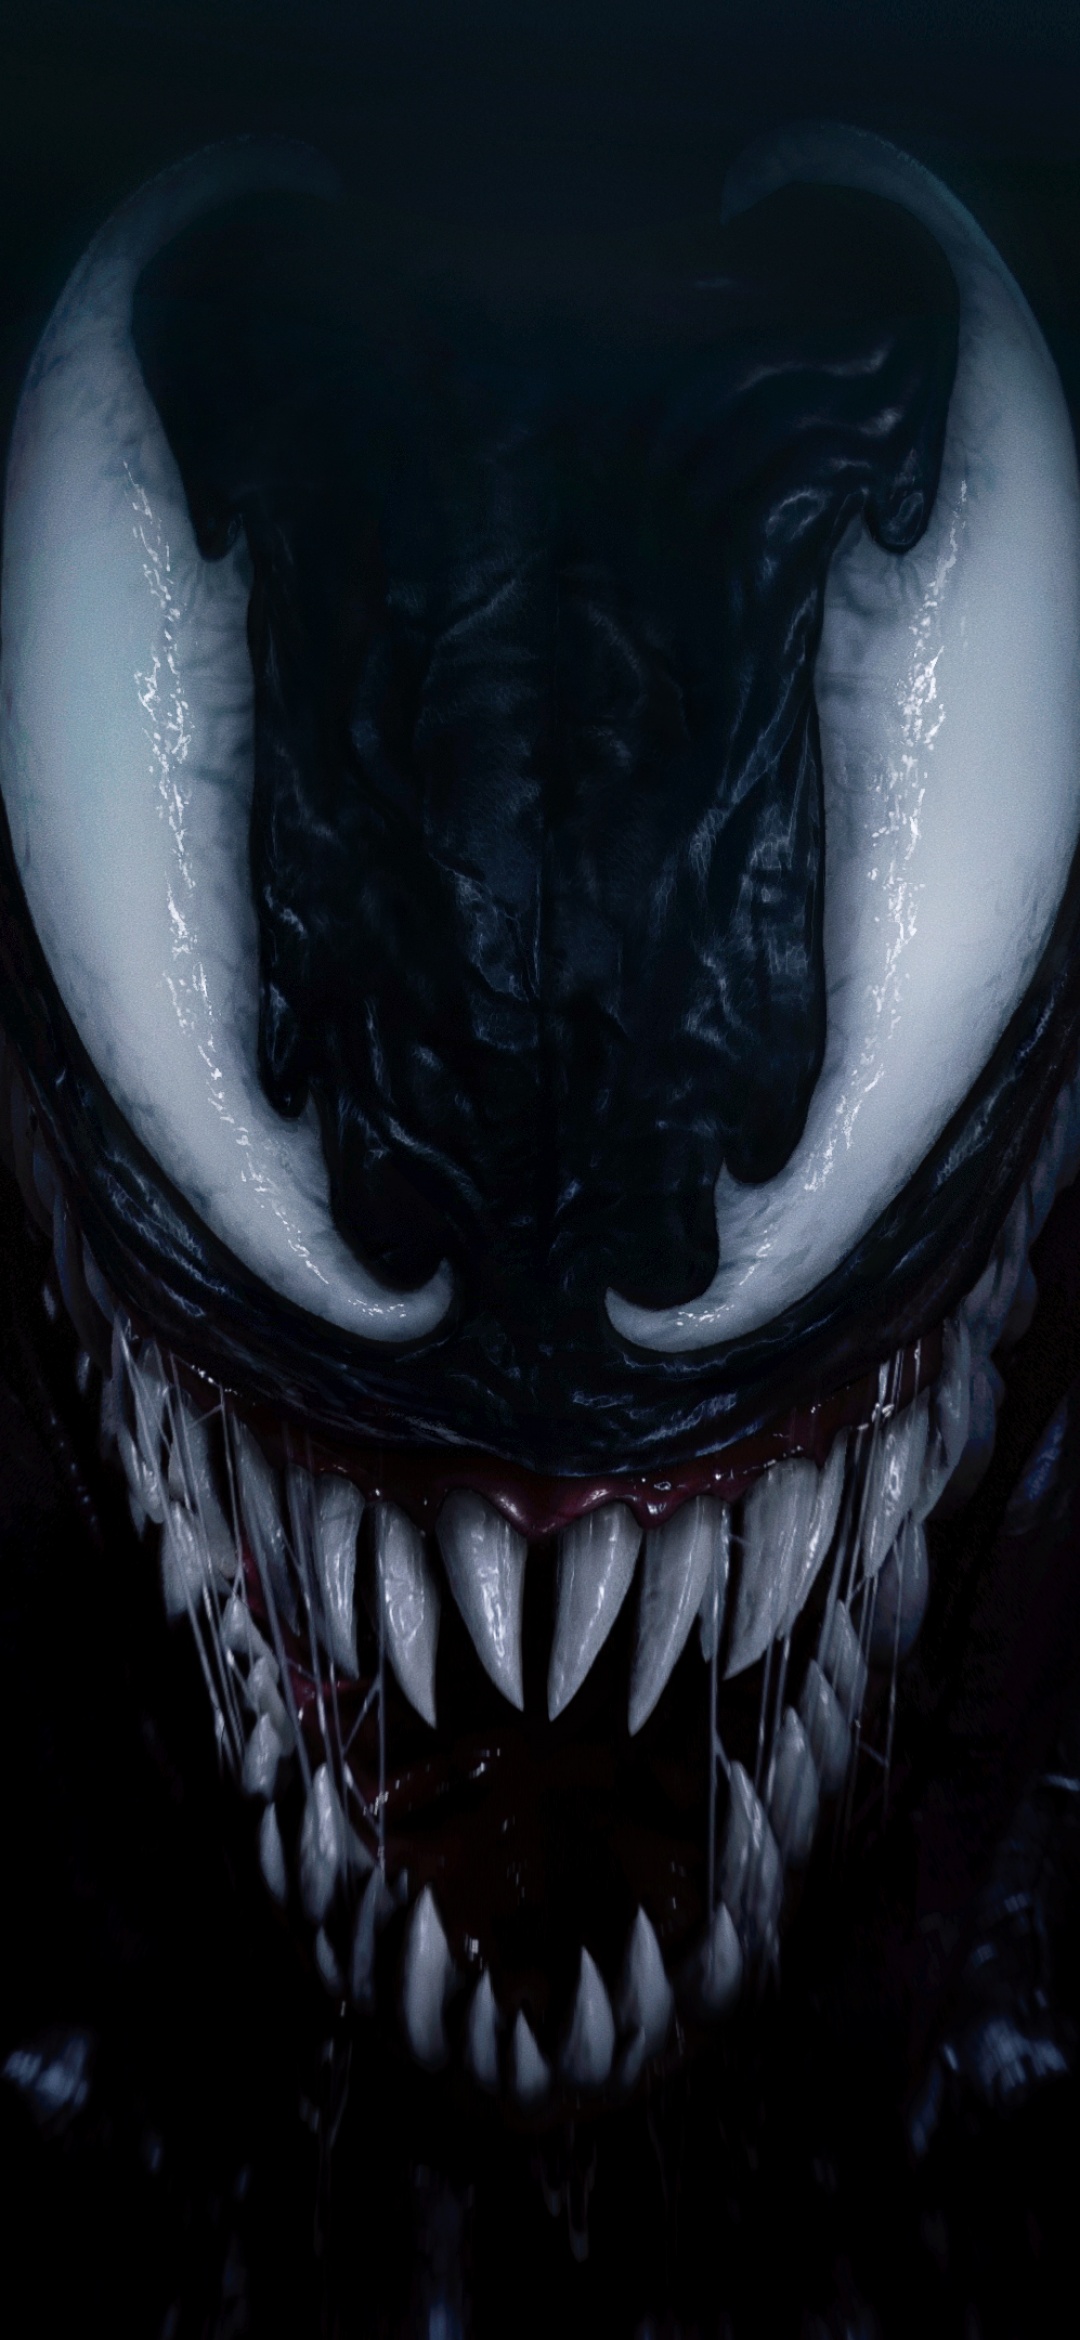 Bạn muốn sự mạnh mẽ và bá đạo trên màn hình điện thoại của bạn? Hãy xem ngay bộ sưu tập Venom Wallpaper 4K - nơi bạn có thể tìm thấy những hình ảnh Venom chất lượng cao ấn tượng đến tuyệt vời.